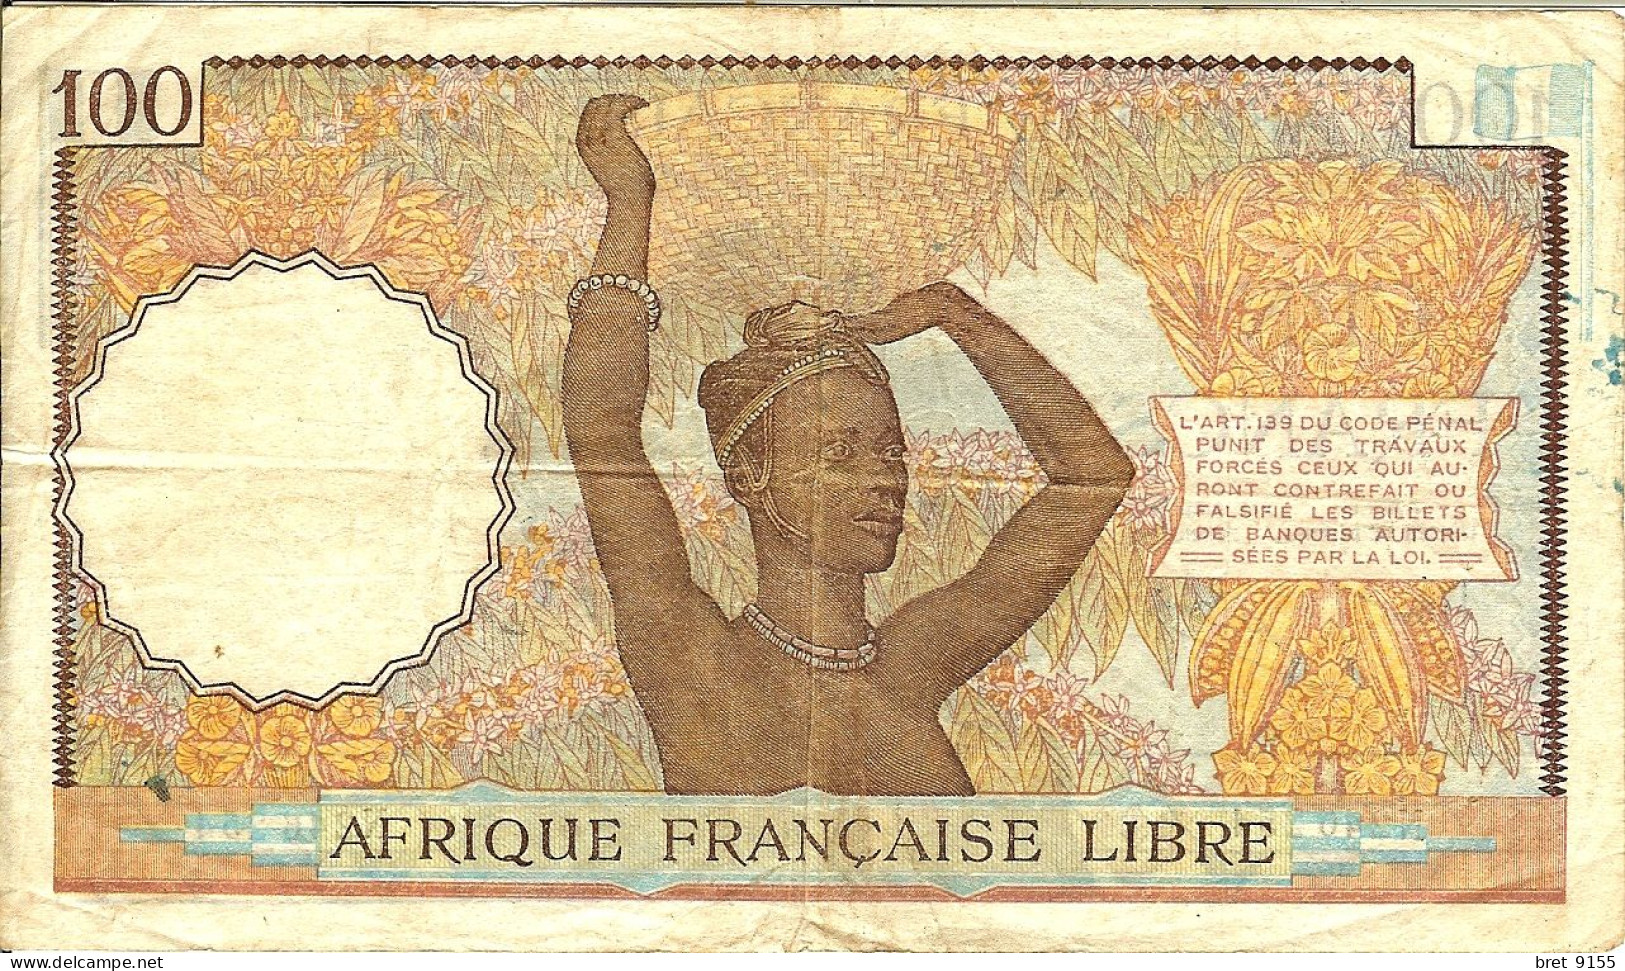 BILLET DE BANQUE AFRIQUE FRANCAISE LIBRE CONGO 100 FRANCS 1941 SERIE N246254 - Südafrika